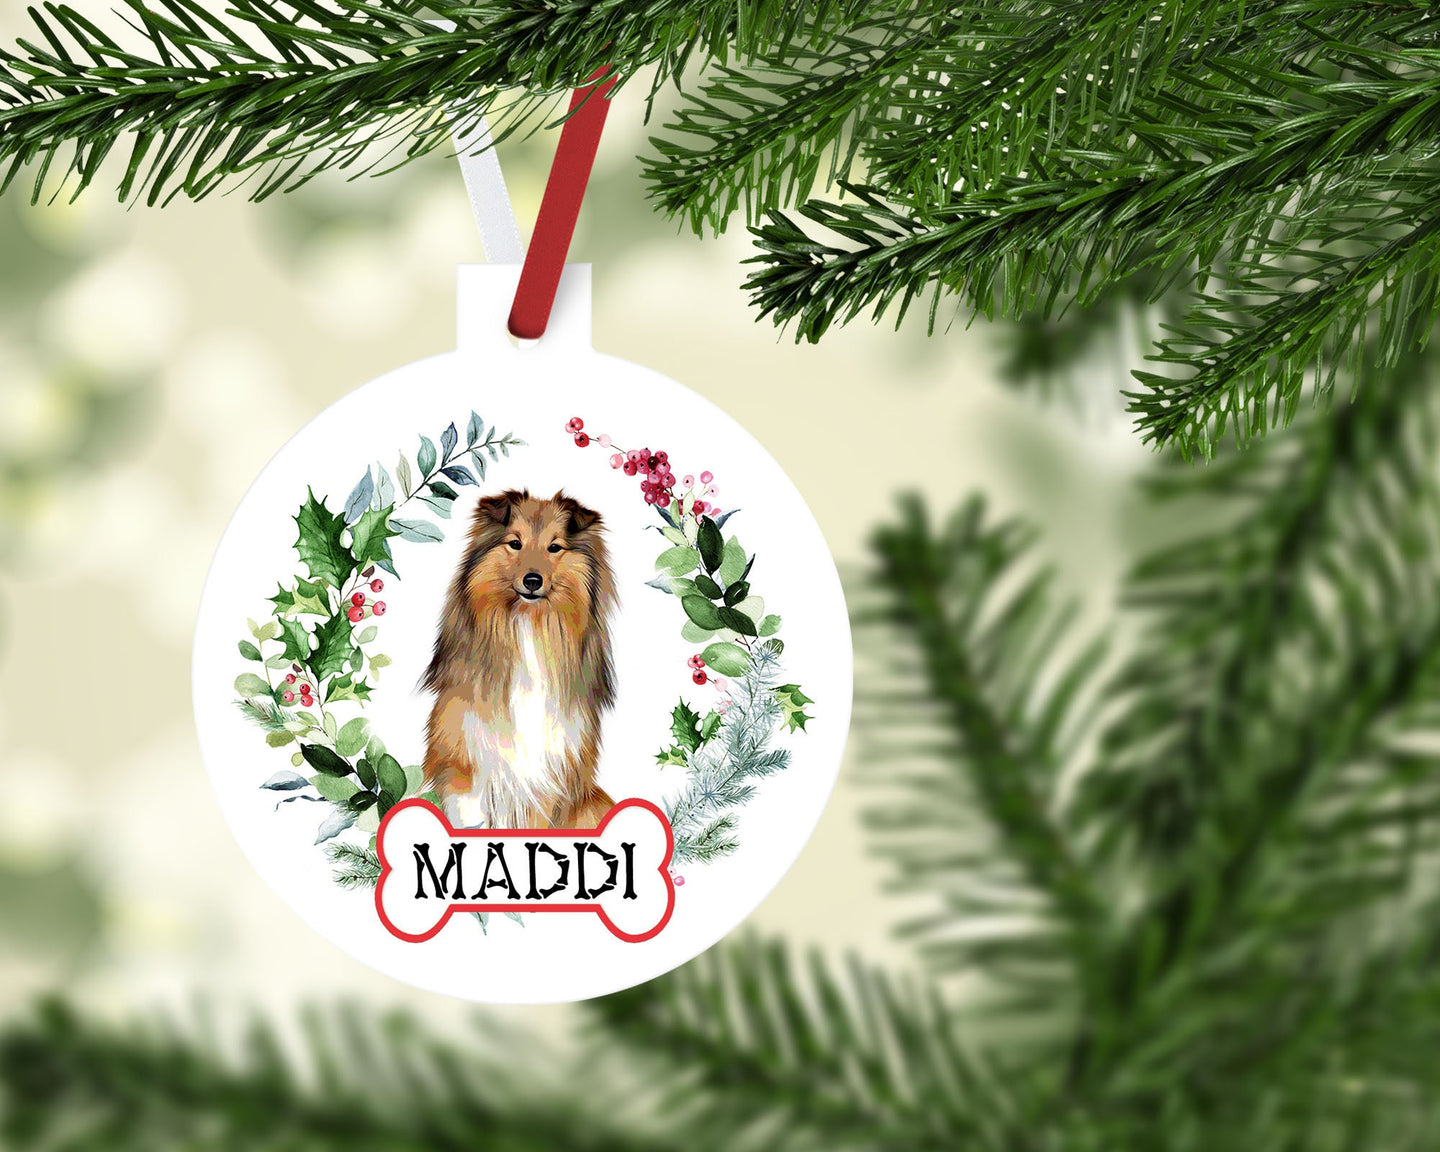 Shetland Sheepdog Ornaments. Custom Shetland Sheepdog Ornament. Personalized Shetland Sheep Dog Ornament. Perfect Shetland Sheepdog Gifts!